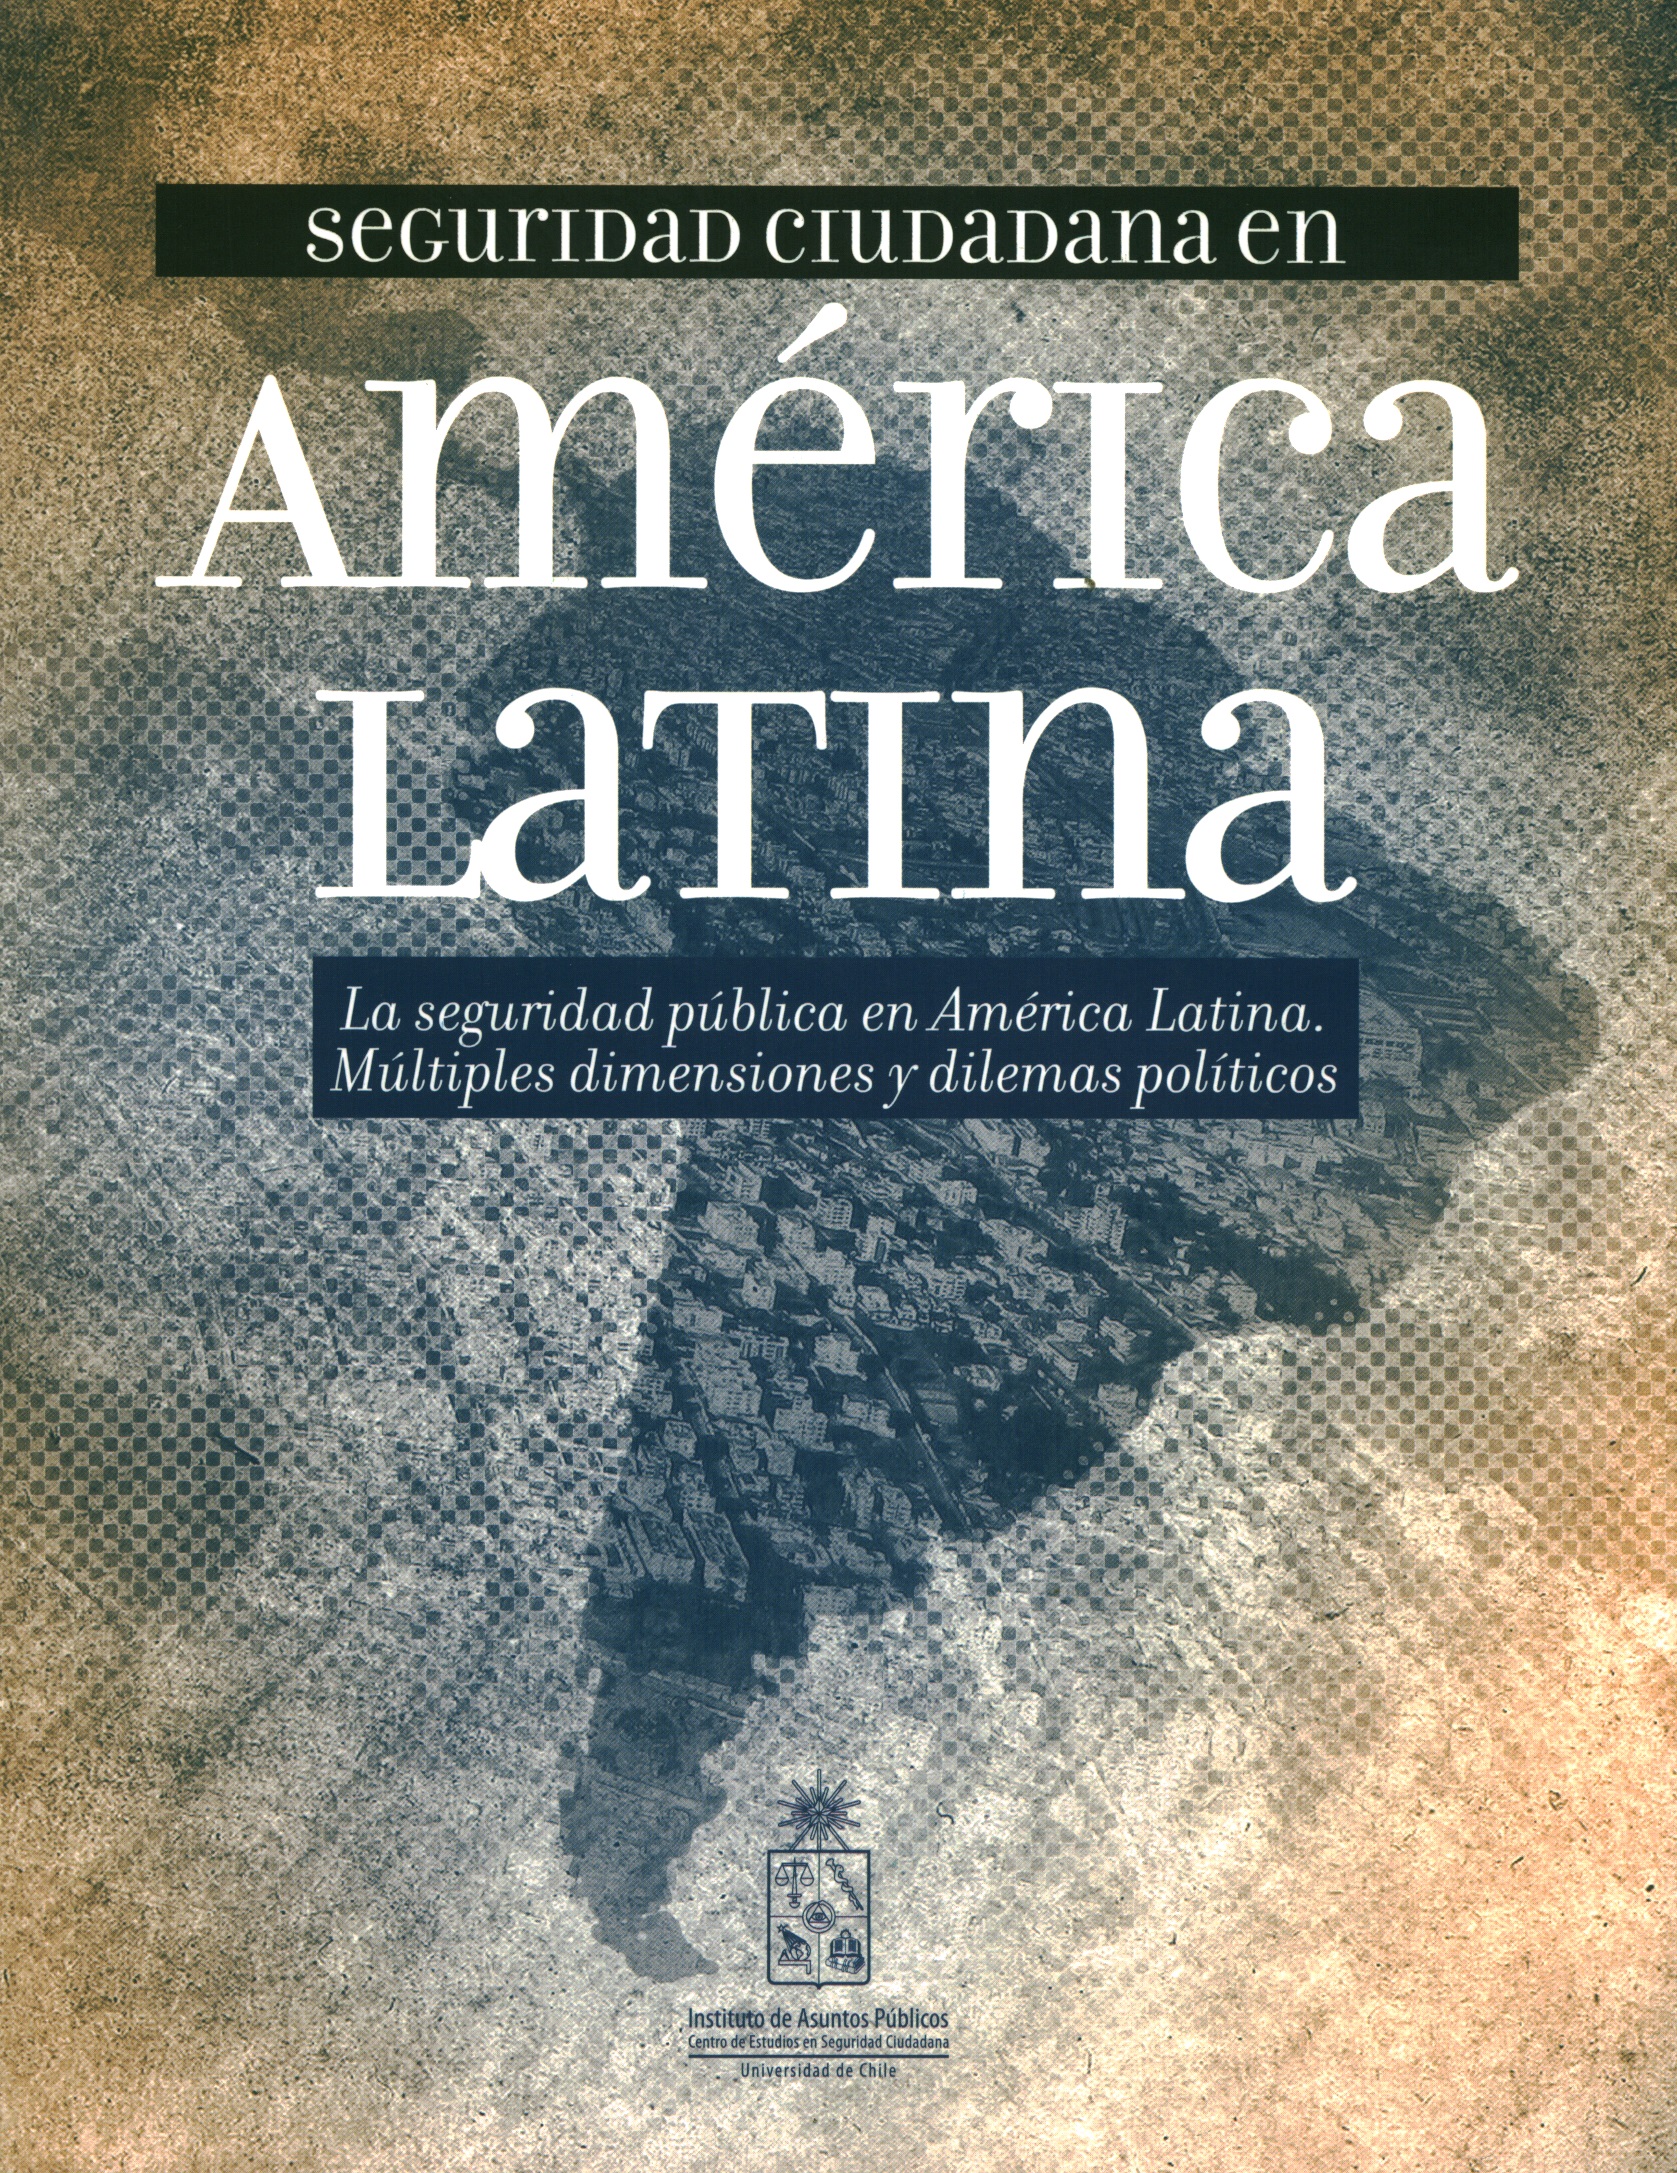 Seguridad ciudadana en América Latina. La seguridad pública en américa Latina. Múltiples dimensiones y dilemas políticos